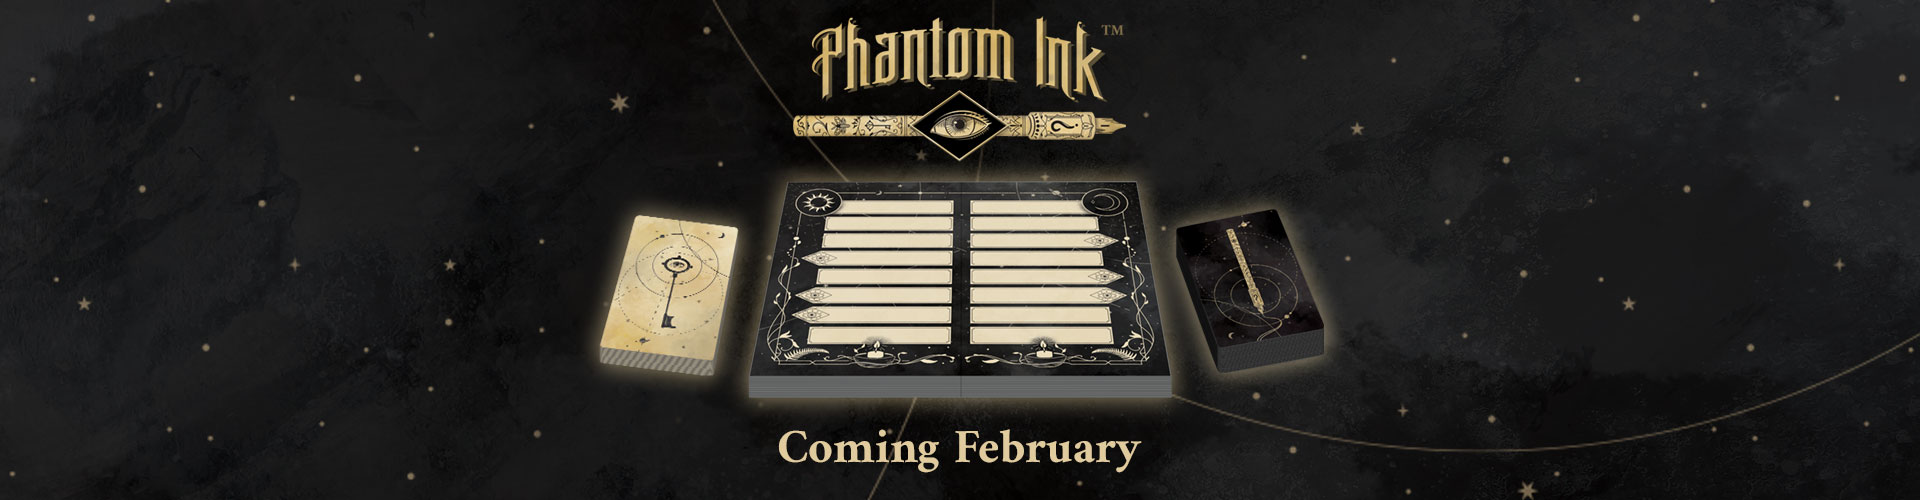 Phantom Ink Coming Soon